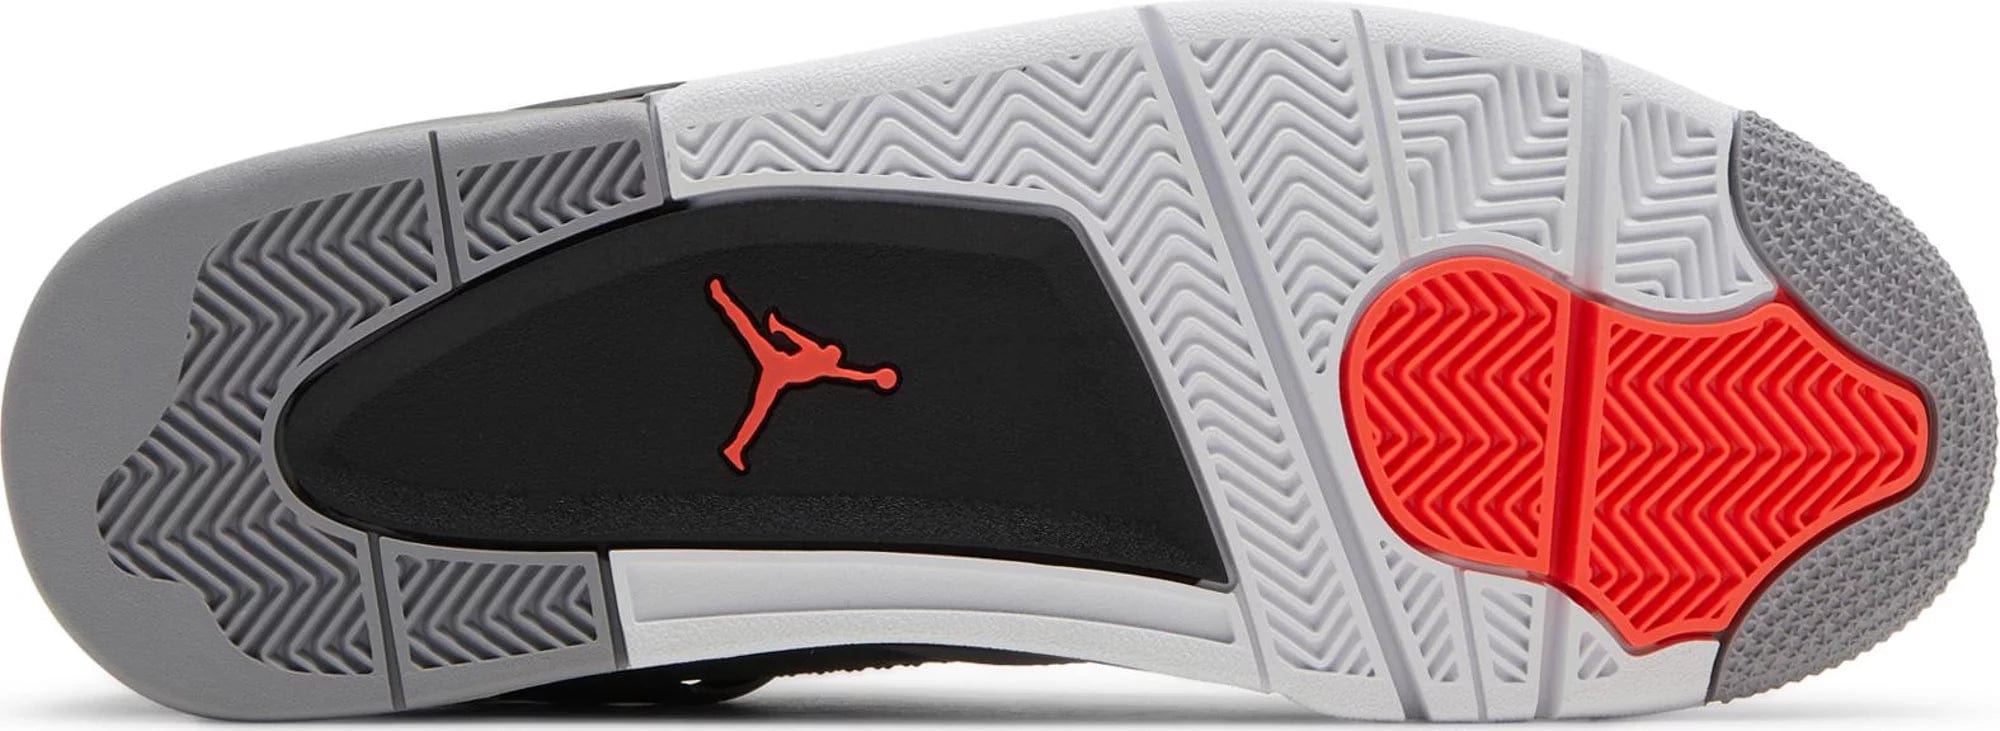 sneakers Nike Air Jordan 4 Infrared Men's